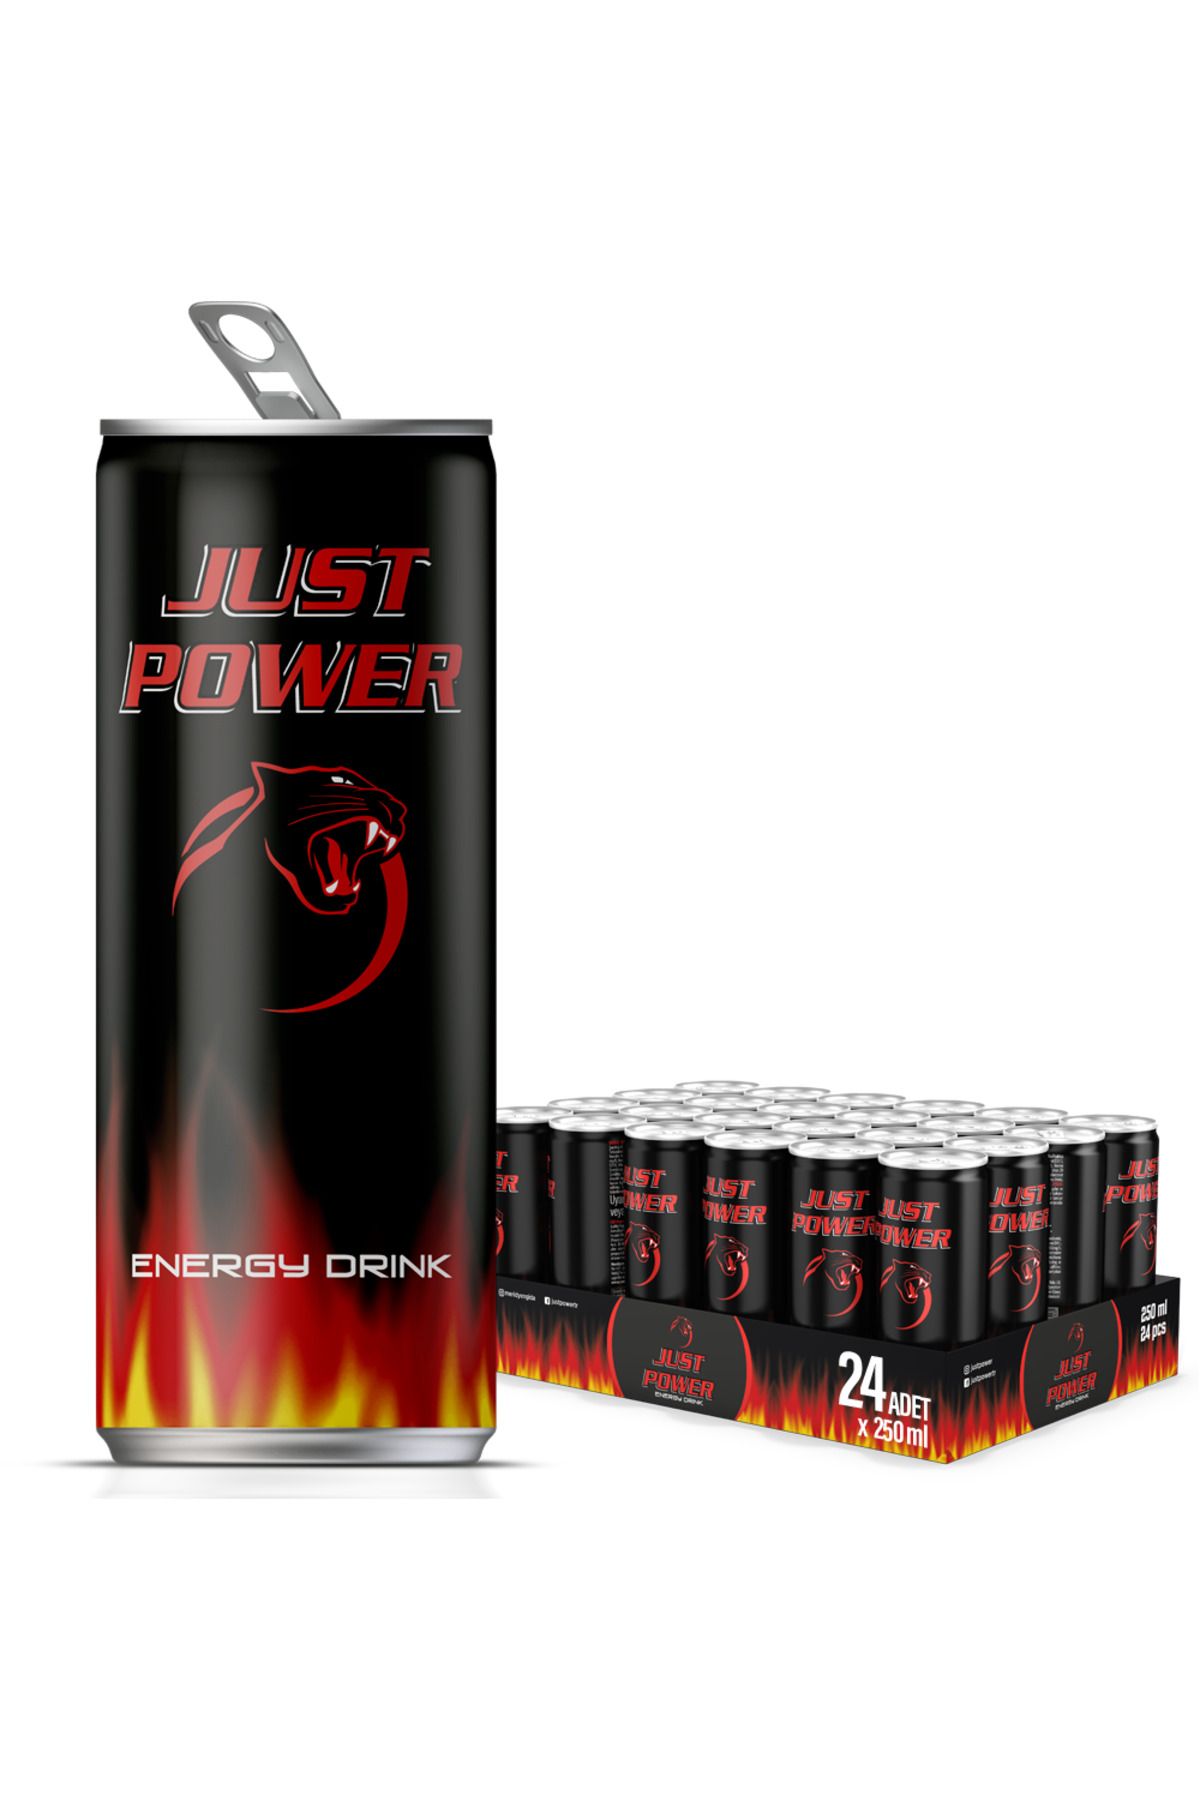 Just Power Enerji Içeceği, 250 ml (24'LÜ PAKET, 24 ADET X 250 ML)